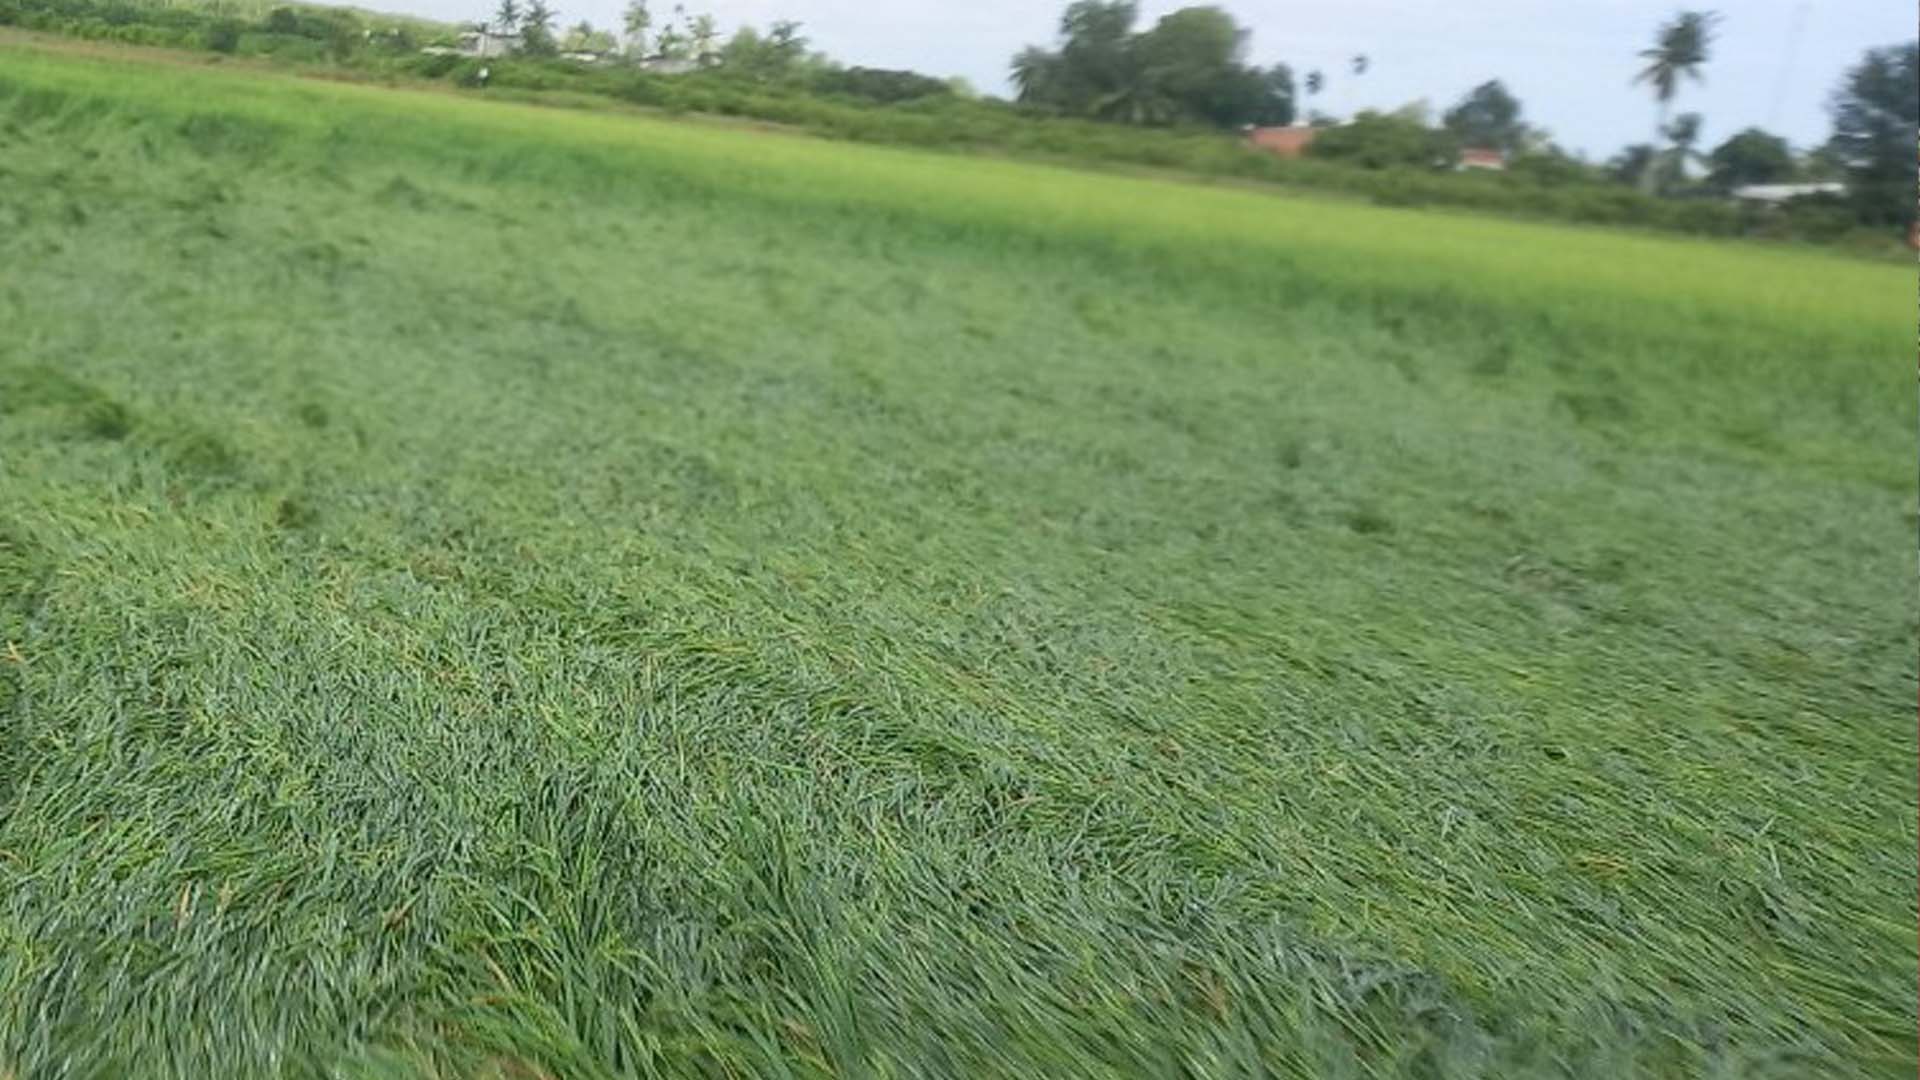 Tây Ninh: Mưa lớn gây thiệt hại cho nhiều diện tích lúa sắp thu hoạch